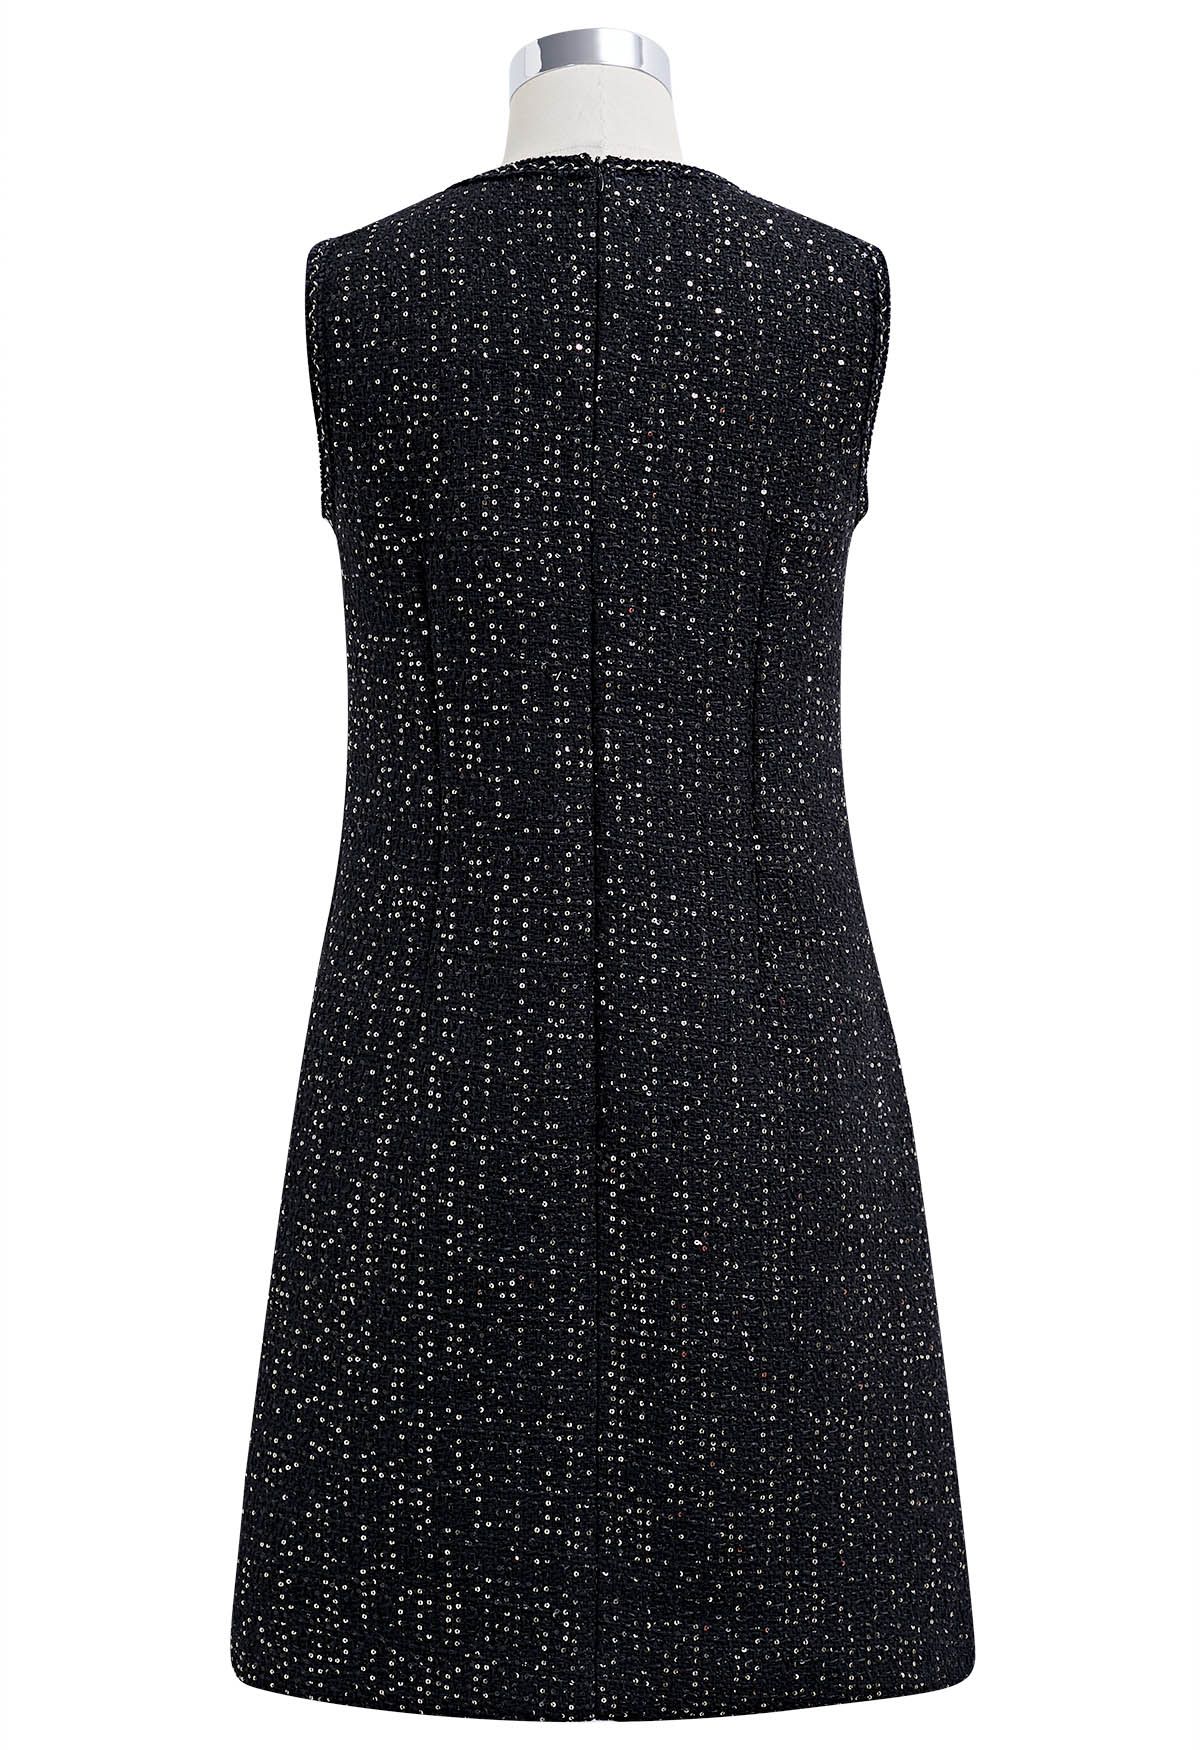 Ärmelloses Tweedkleid mit Paillettenstickerei in Schwarz